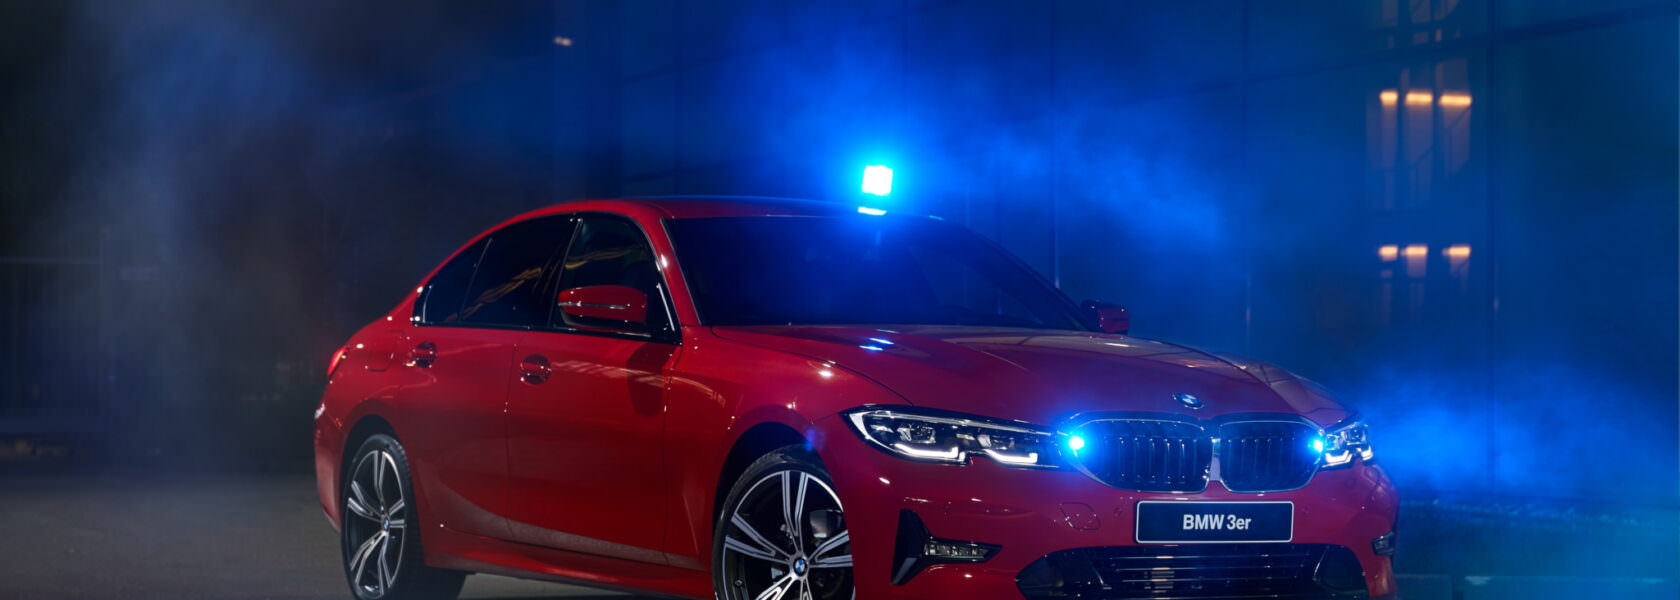 BMW Série 3 RETTmobil 2019